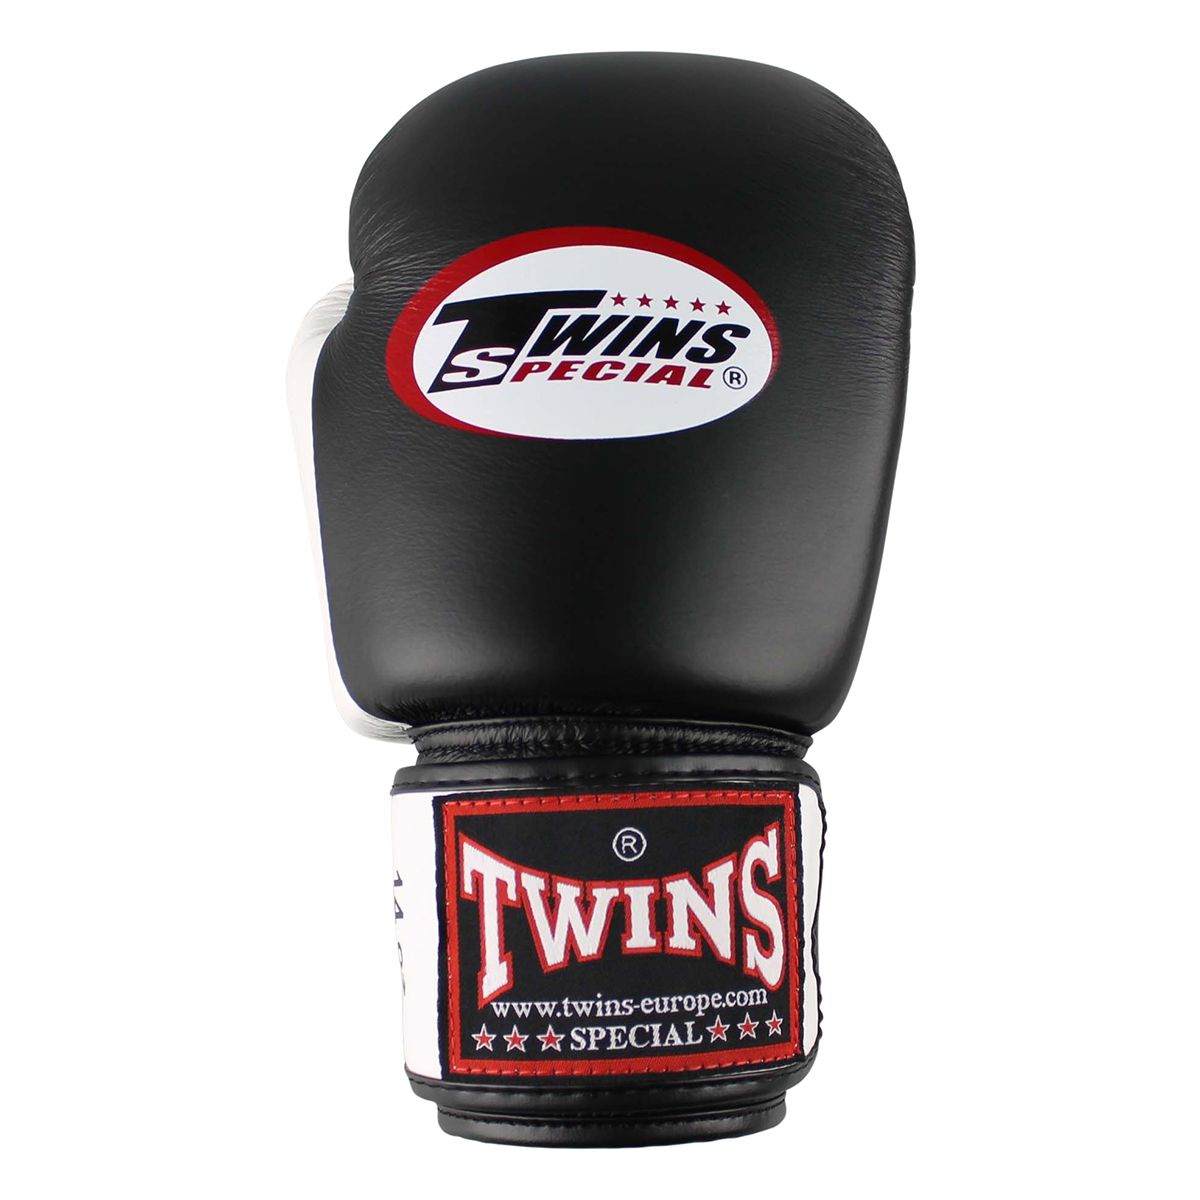 Twins Special - Bokshandschoenen - BGVL 3   De Twins BGVL-3 Boxing Glove is gemaakt van het beste Thaise leer, dit maakt de T